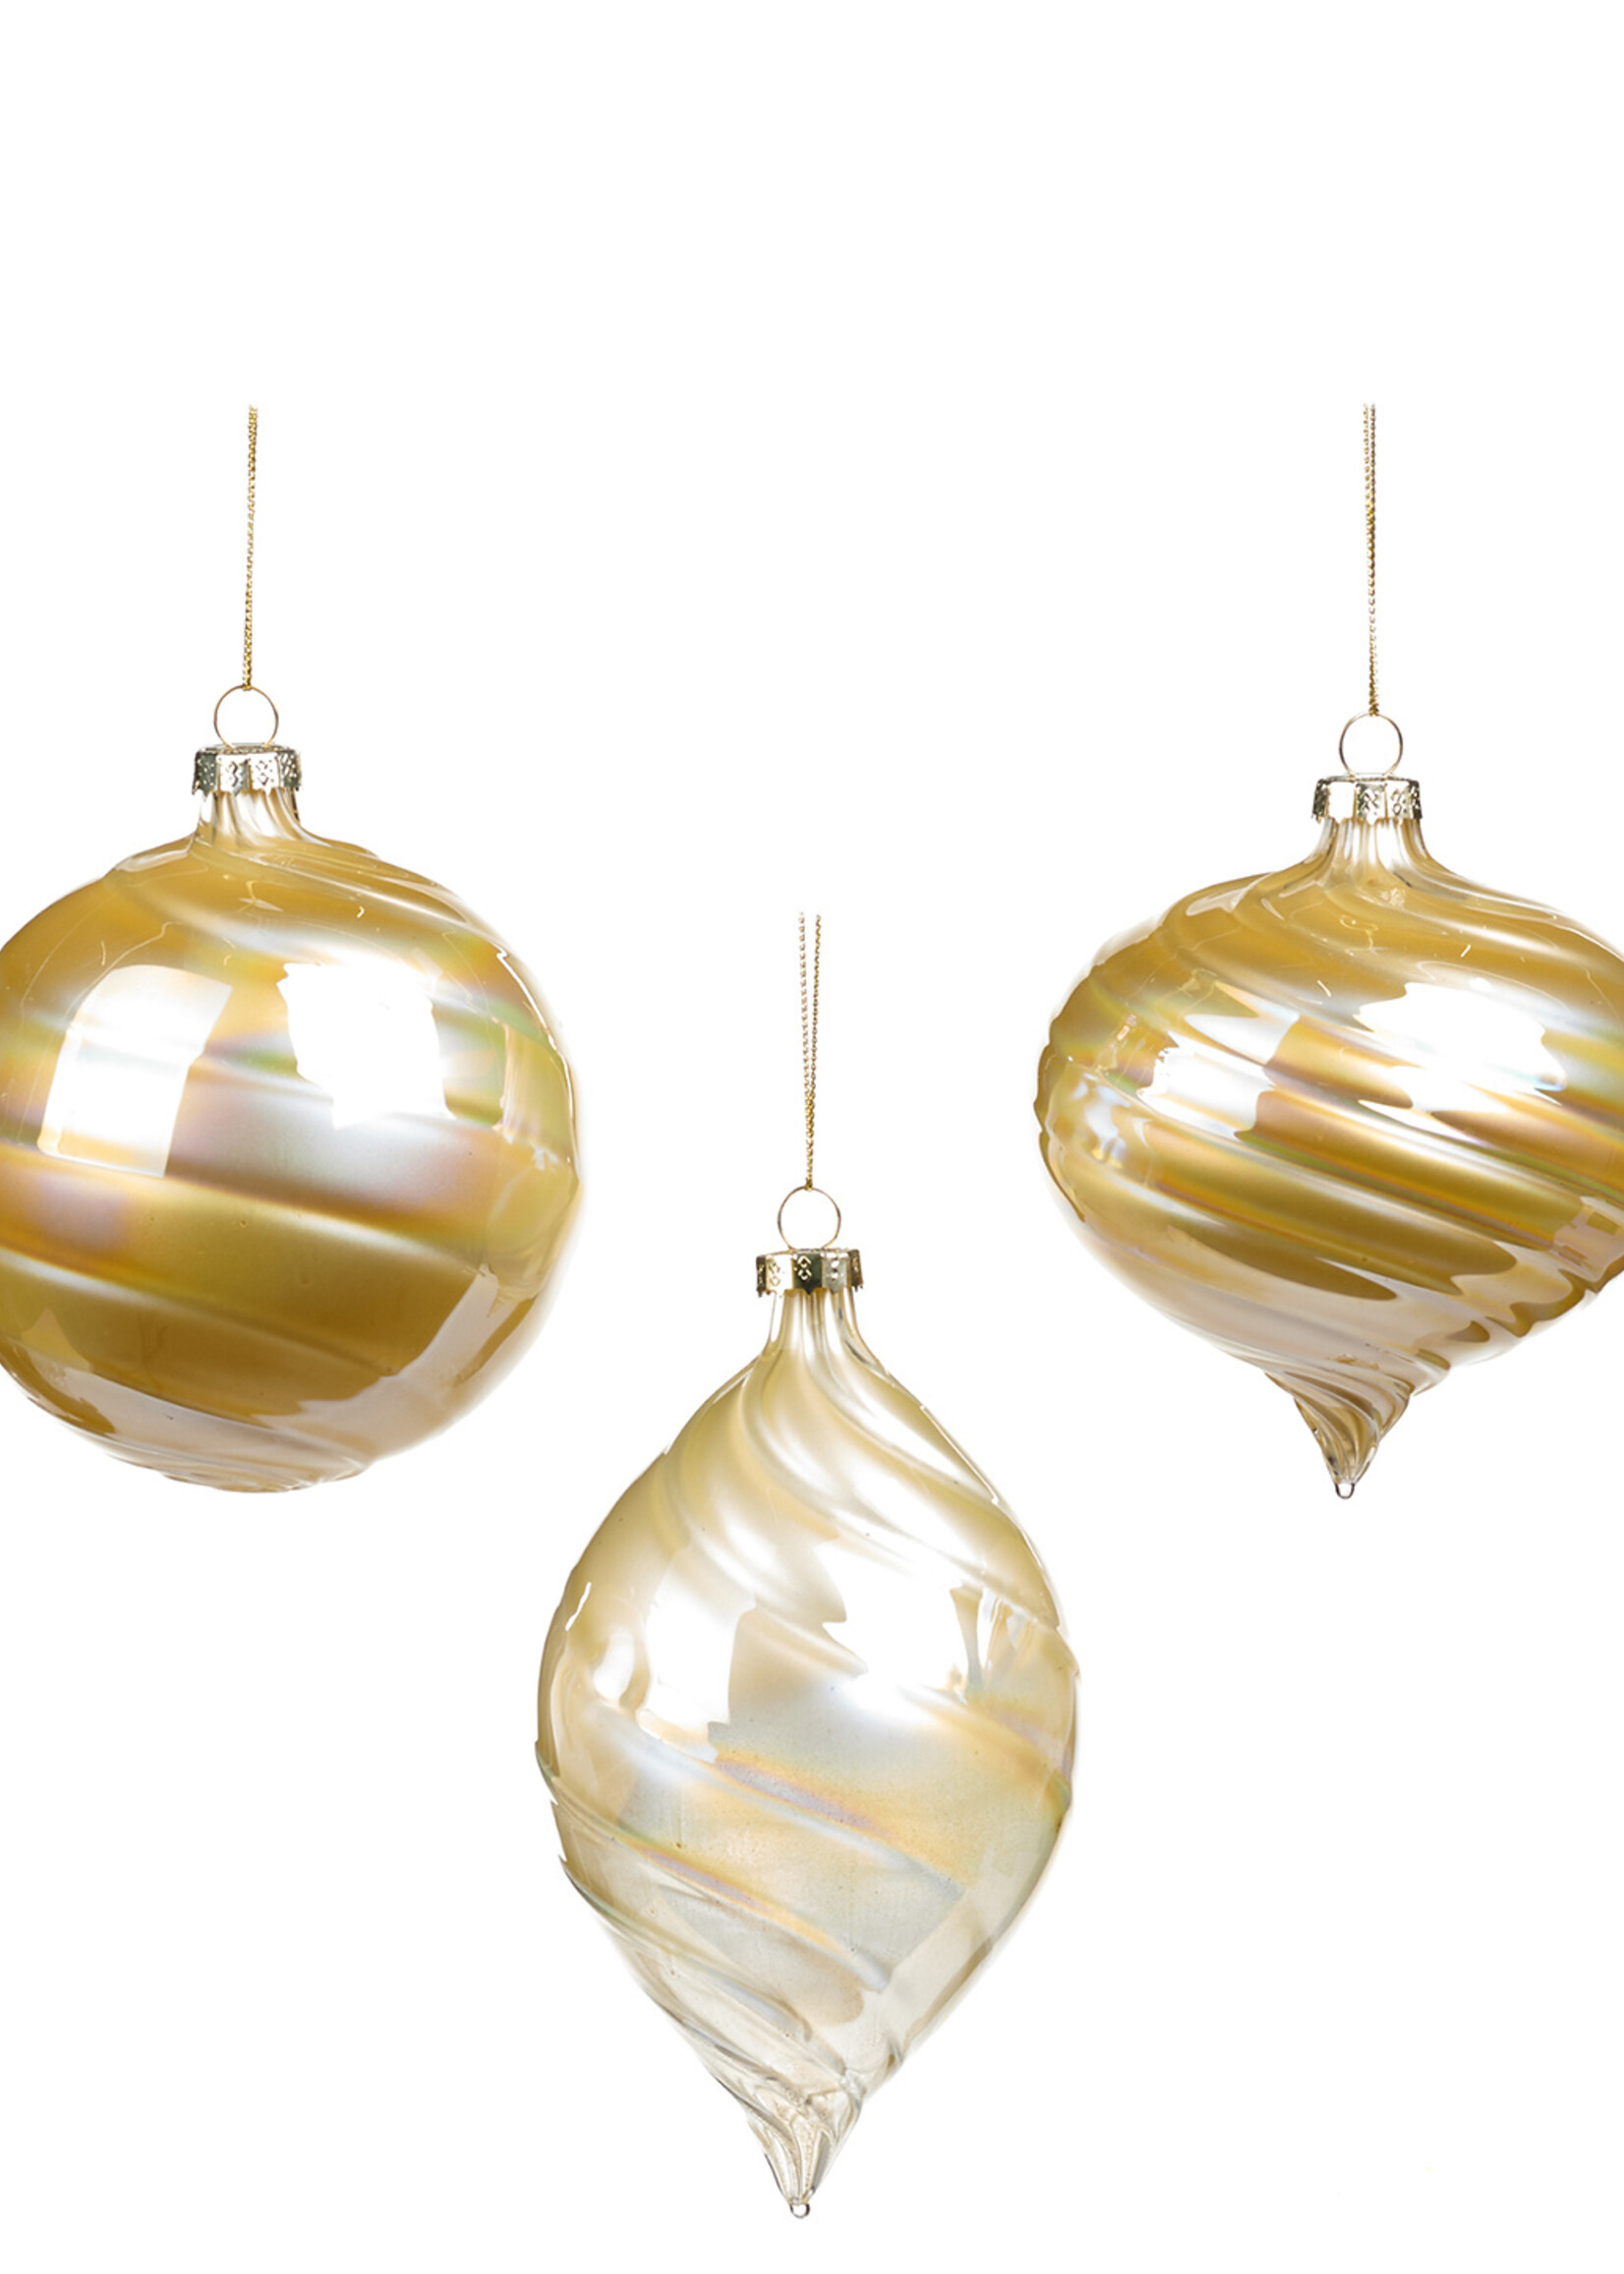 Goodwill M & G Gedraaid  glas Ornament, Set van 3